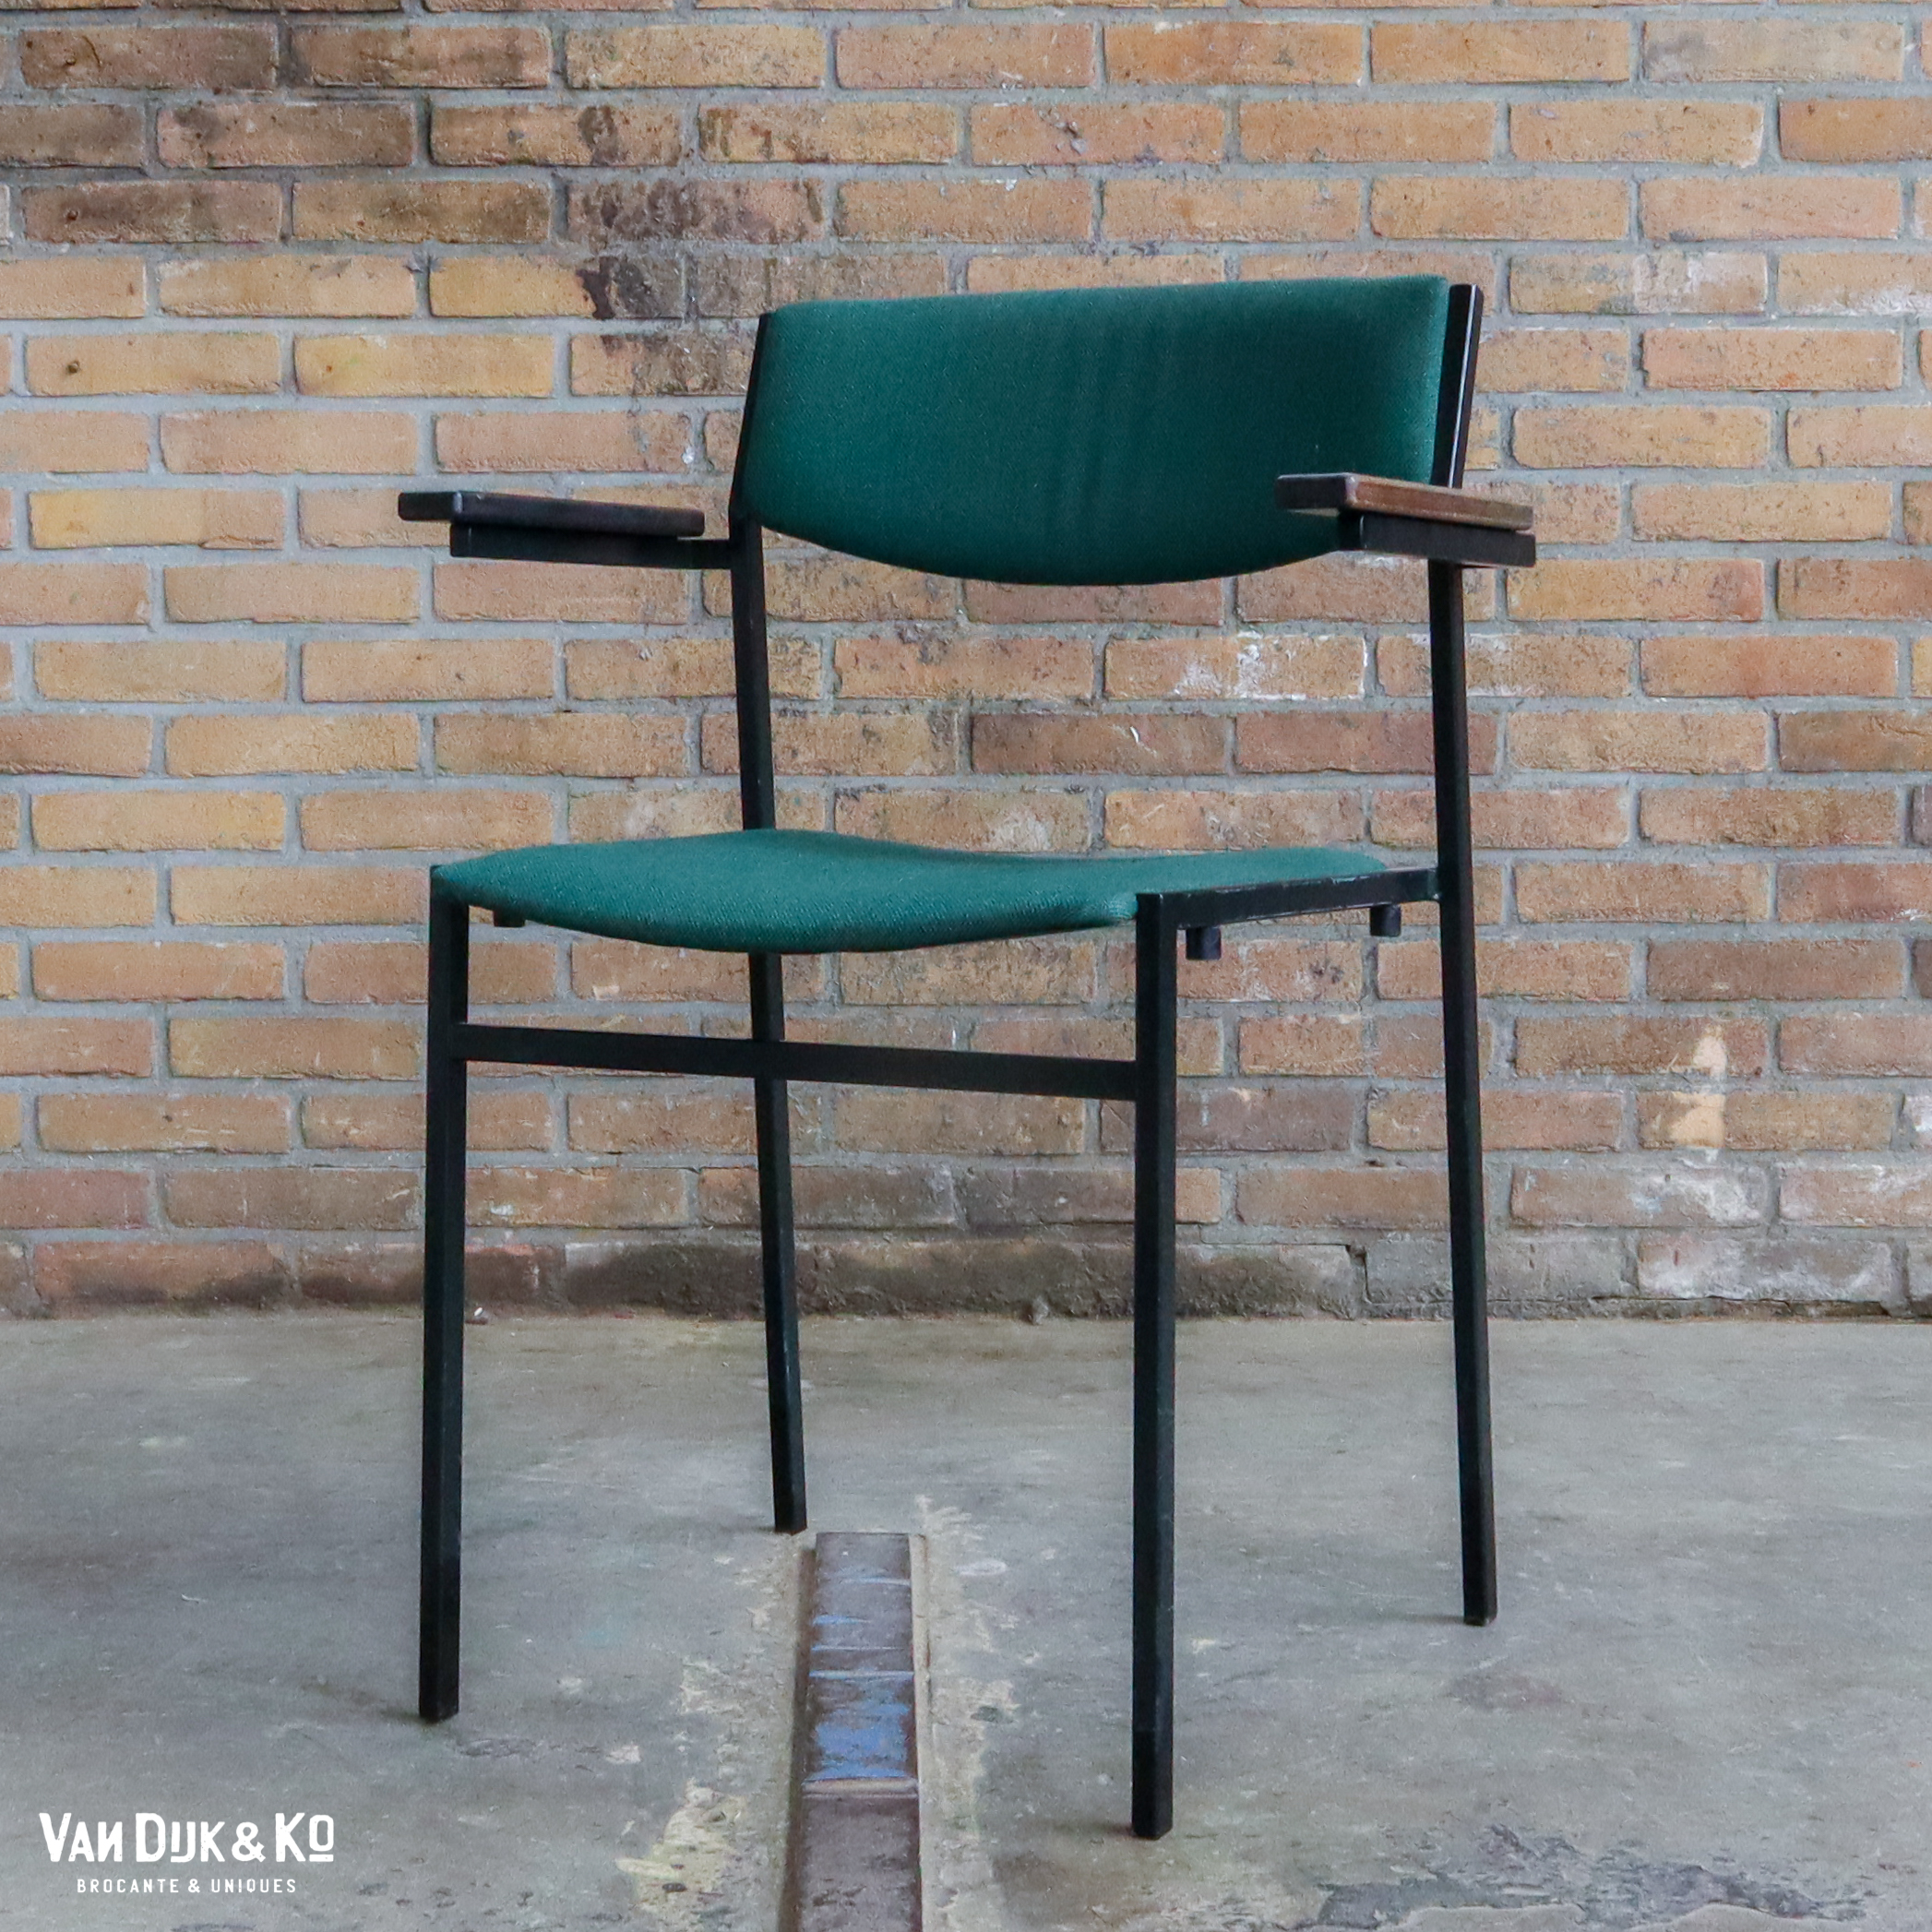 als je kunt Groenland pil Design stoel – Gijs van der Sluis » Van Dijk & Ko